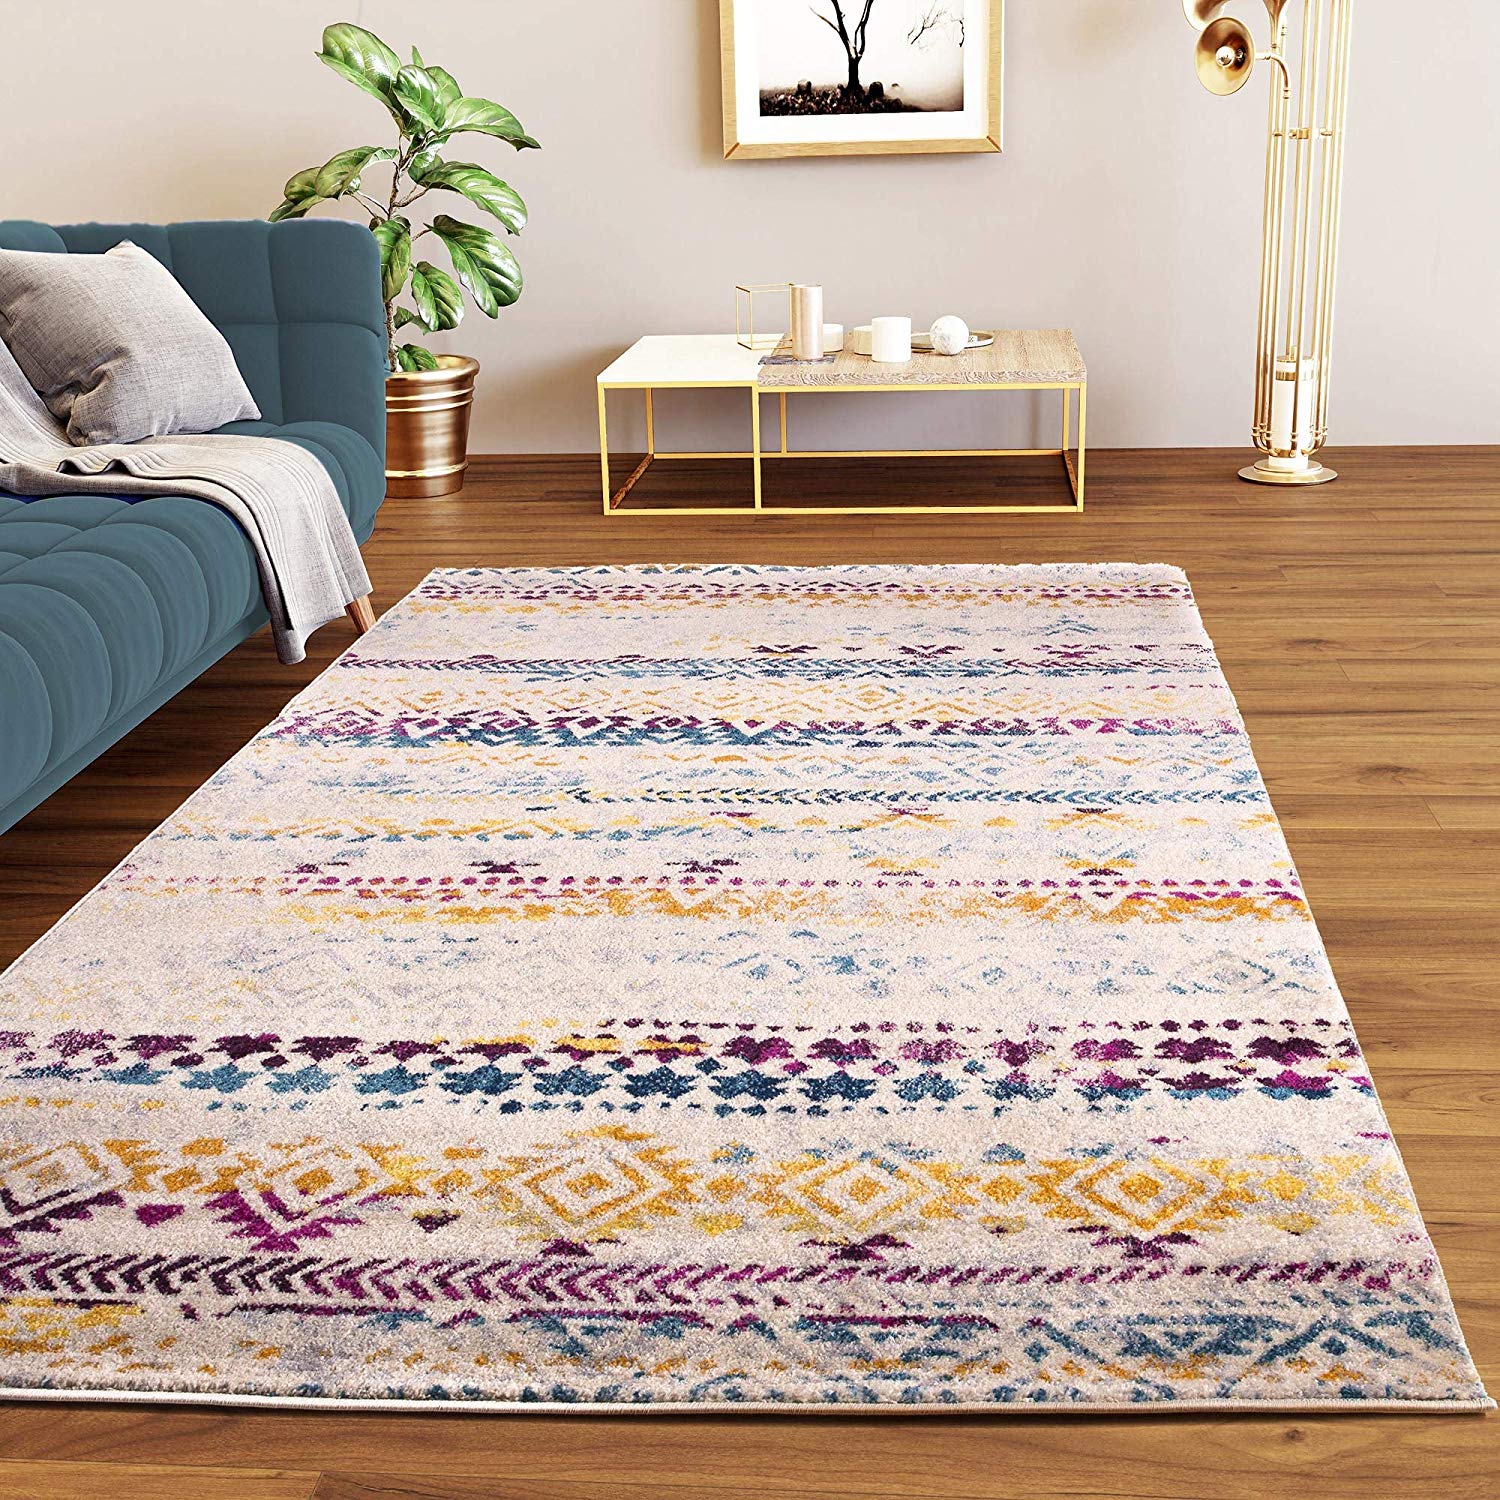 Image result for rug